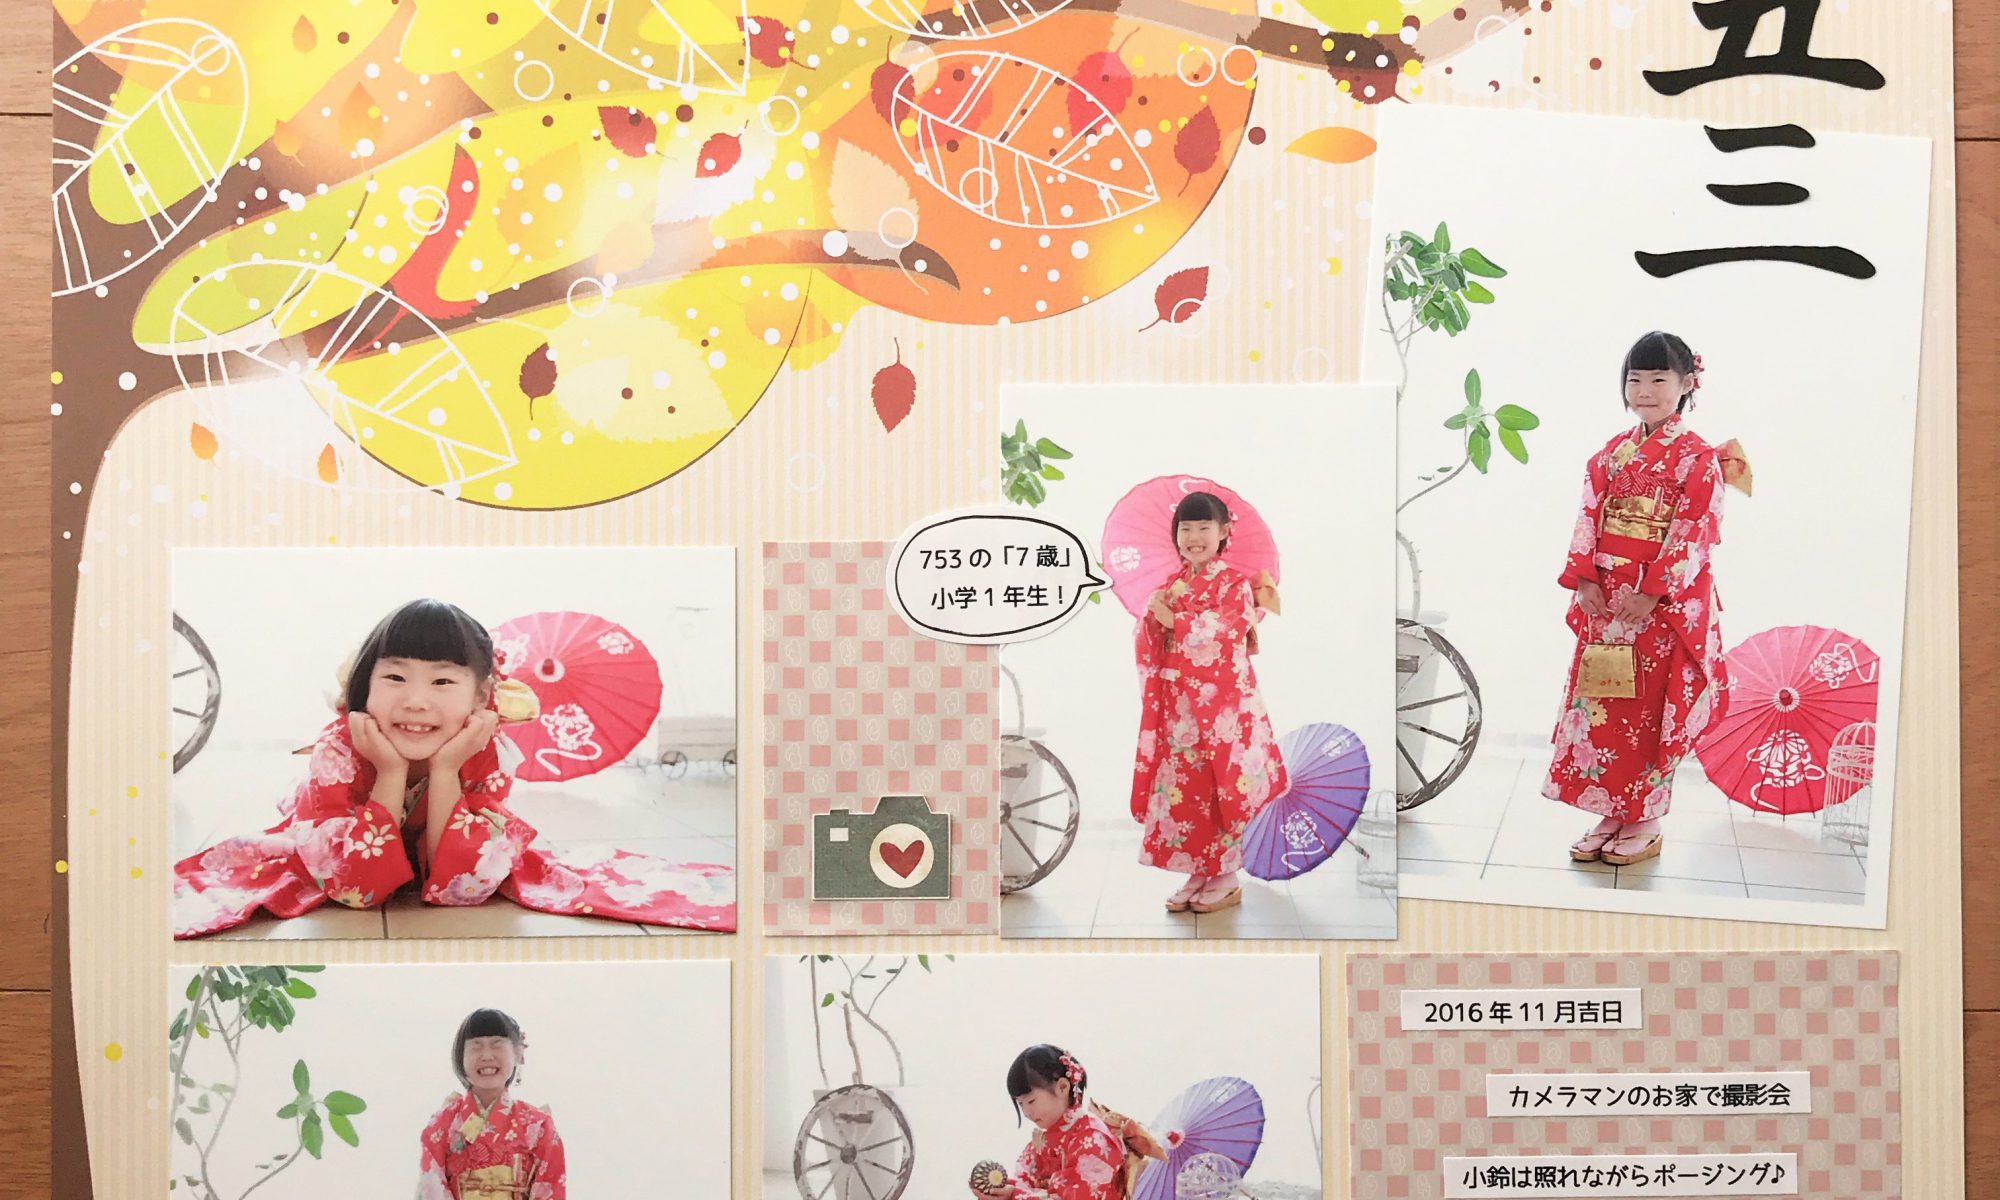 七五三 のアルバムページをたくさんご紹介 漢字タイトルもあるよ 子供の写真整理応援サイト